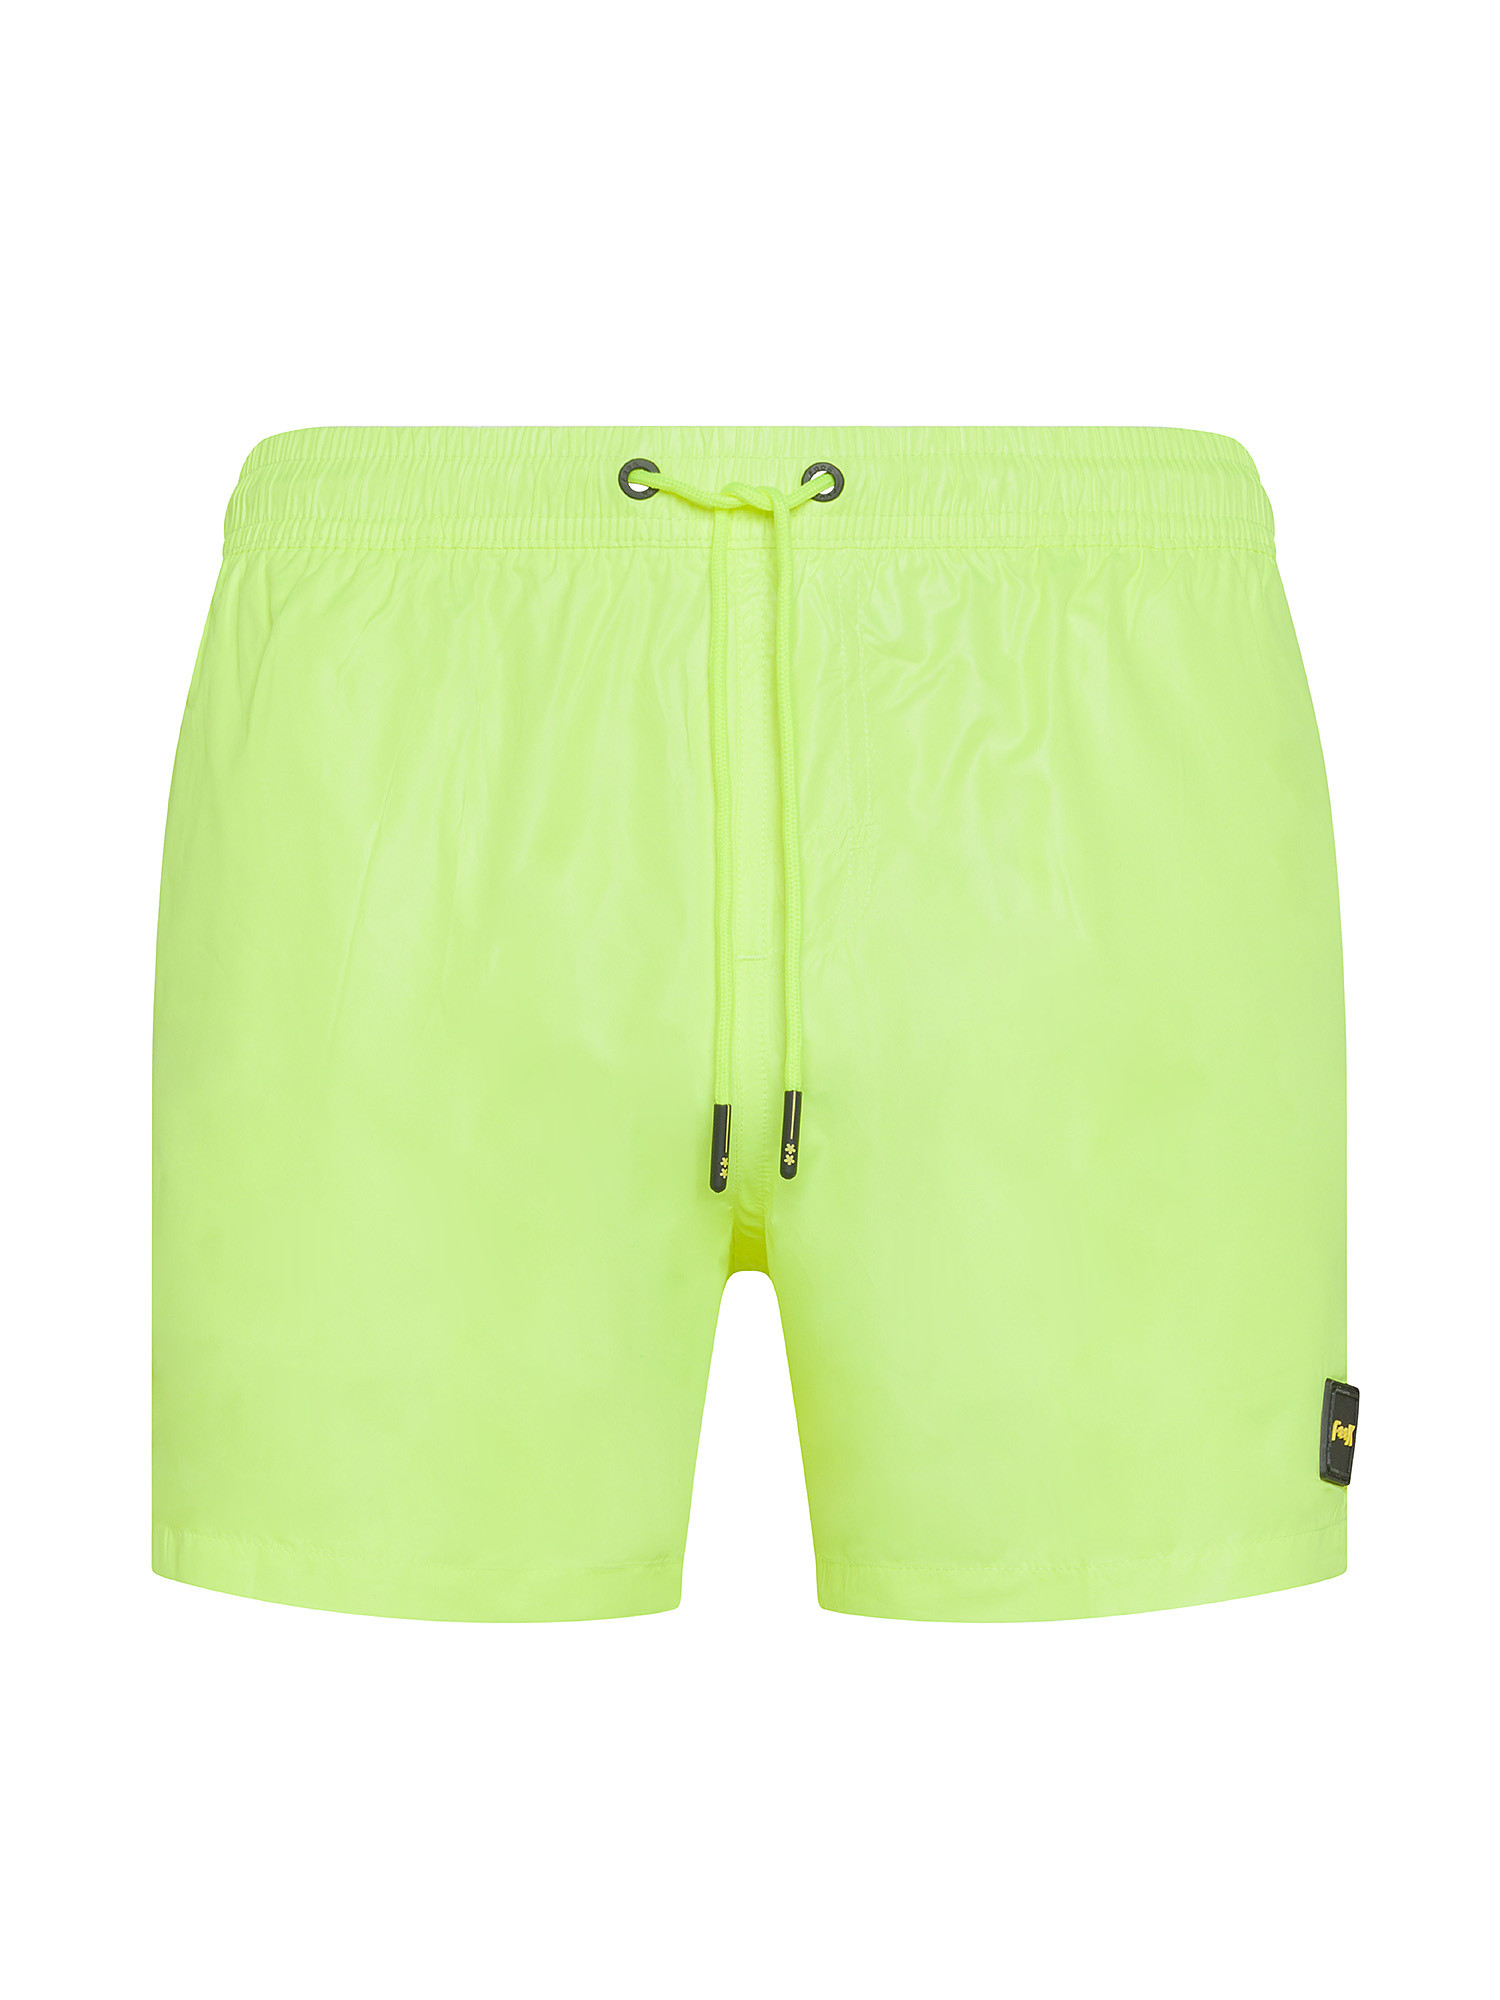 F**K - Shiny swim shorts, Lime Green, large image number 0